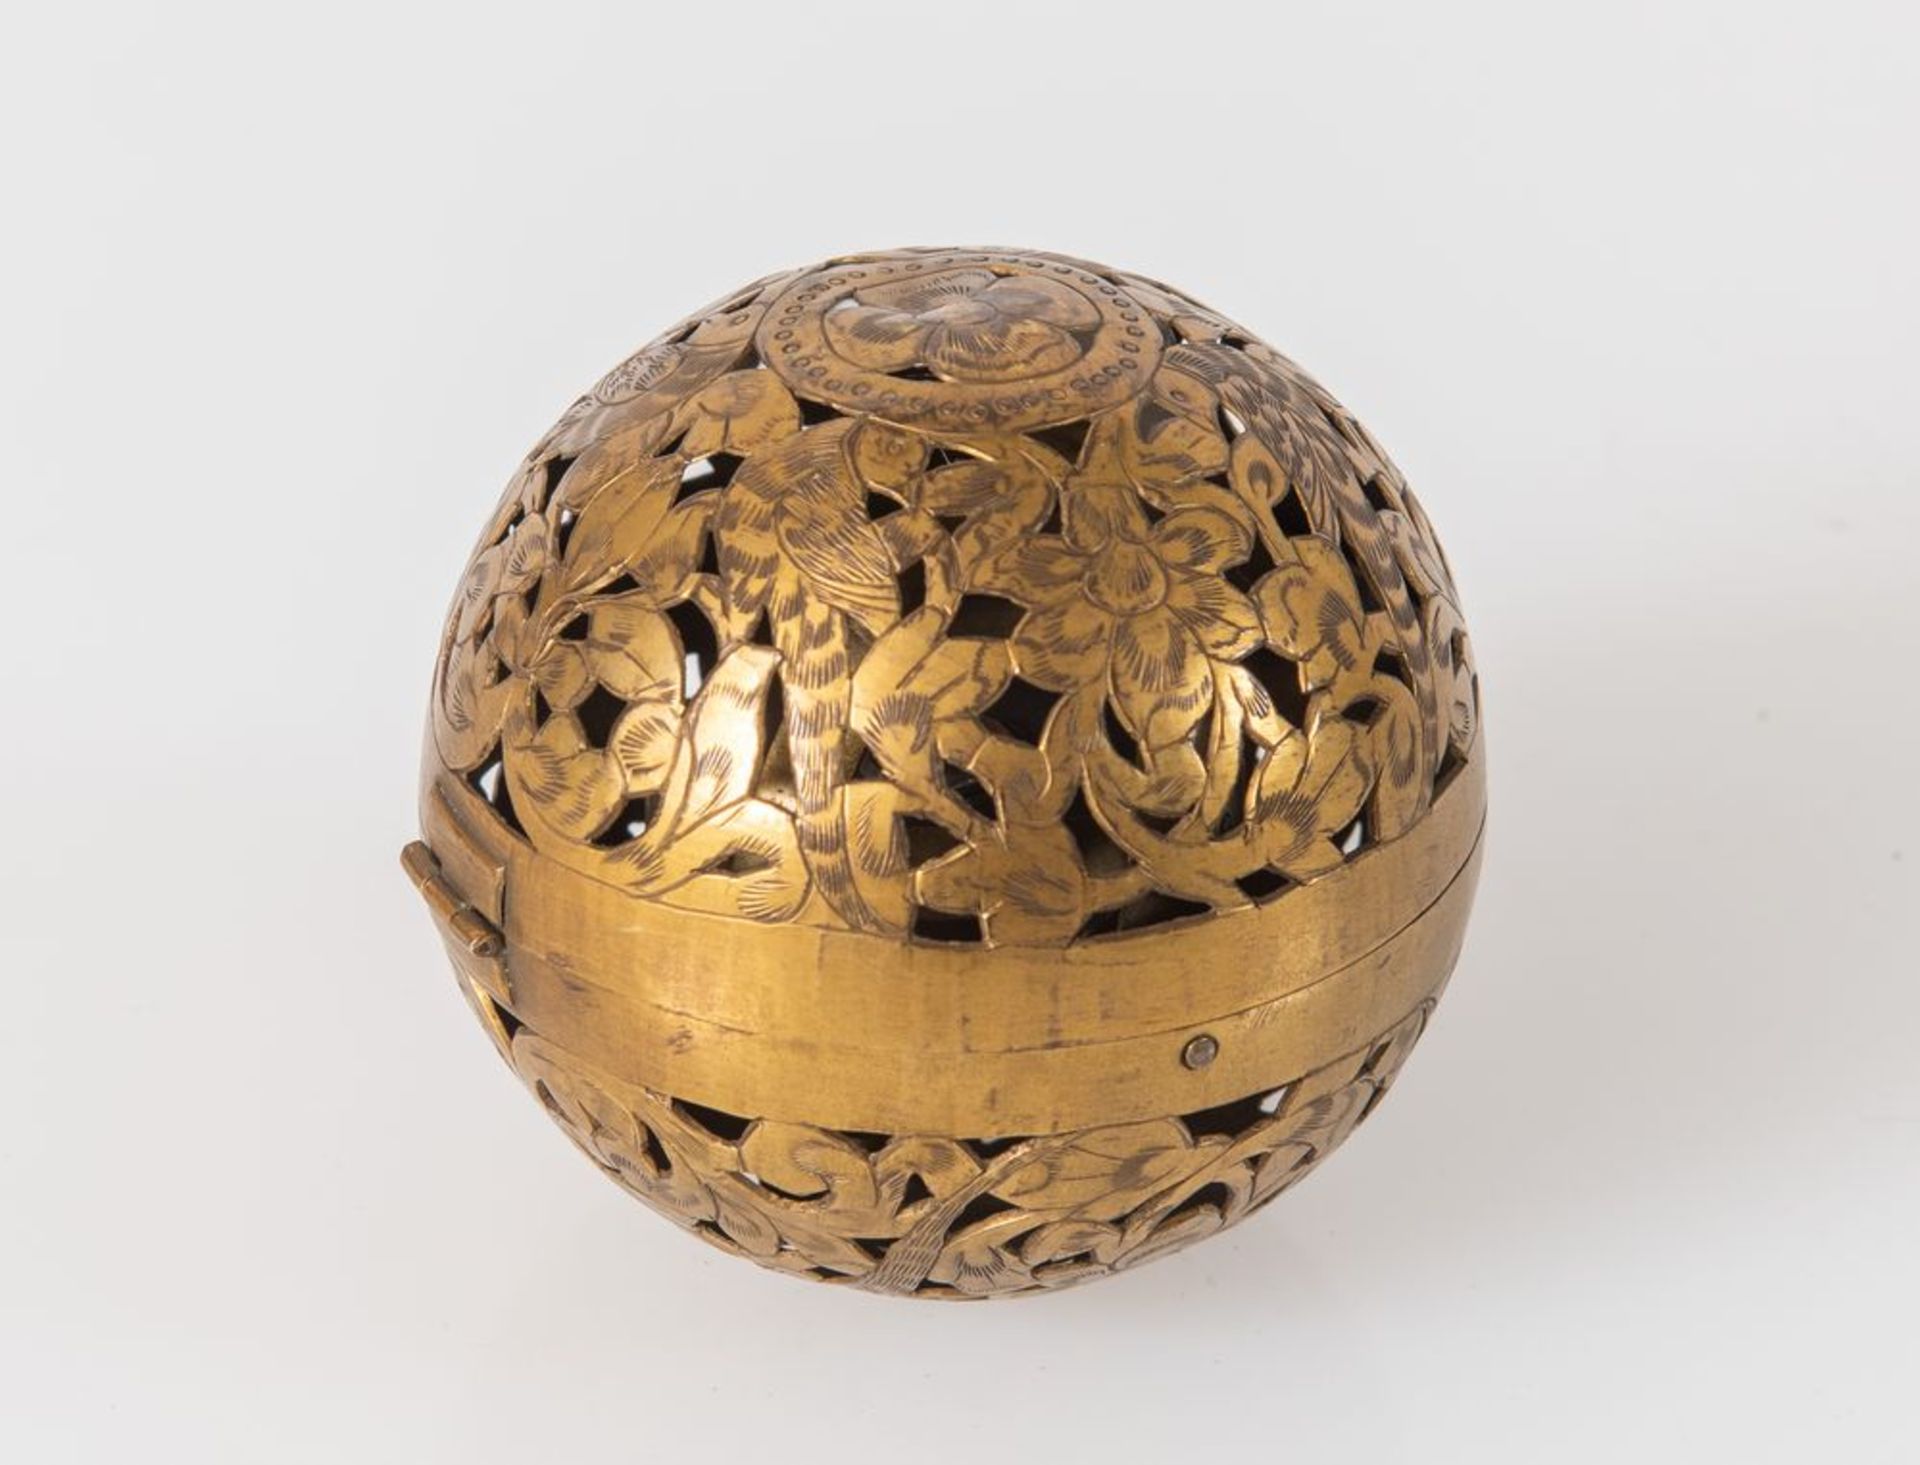 Antica bussola giroscopica racchiusa in sfera di bronzo traforata e incisa. Cm 7,5x8. - Image 2 of 3